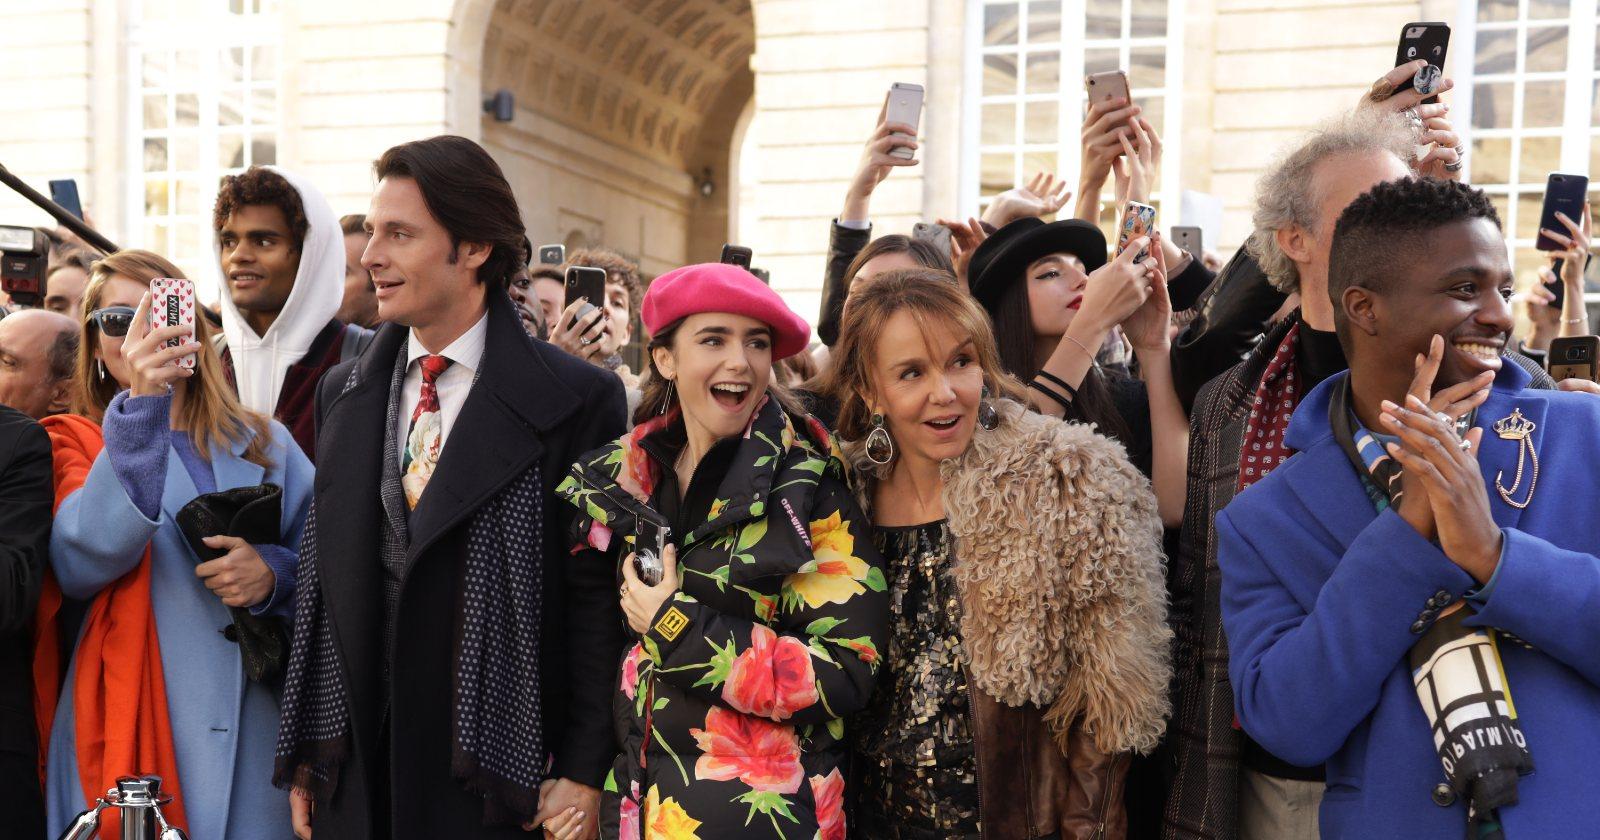 Emily en París en un desfile de modas en el exterior, en medio de una multitud tomando fotos con celulares, acompañada de sus colegas.